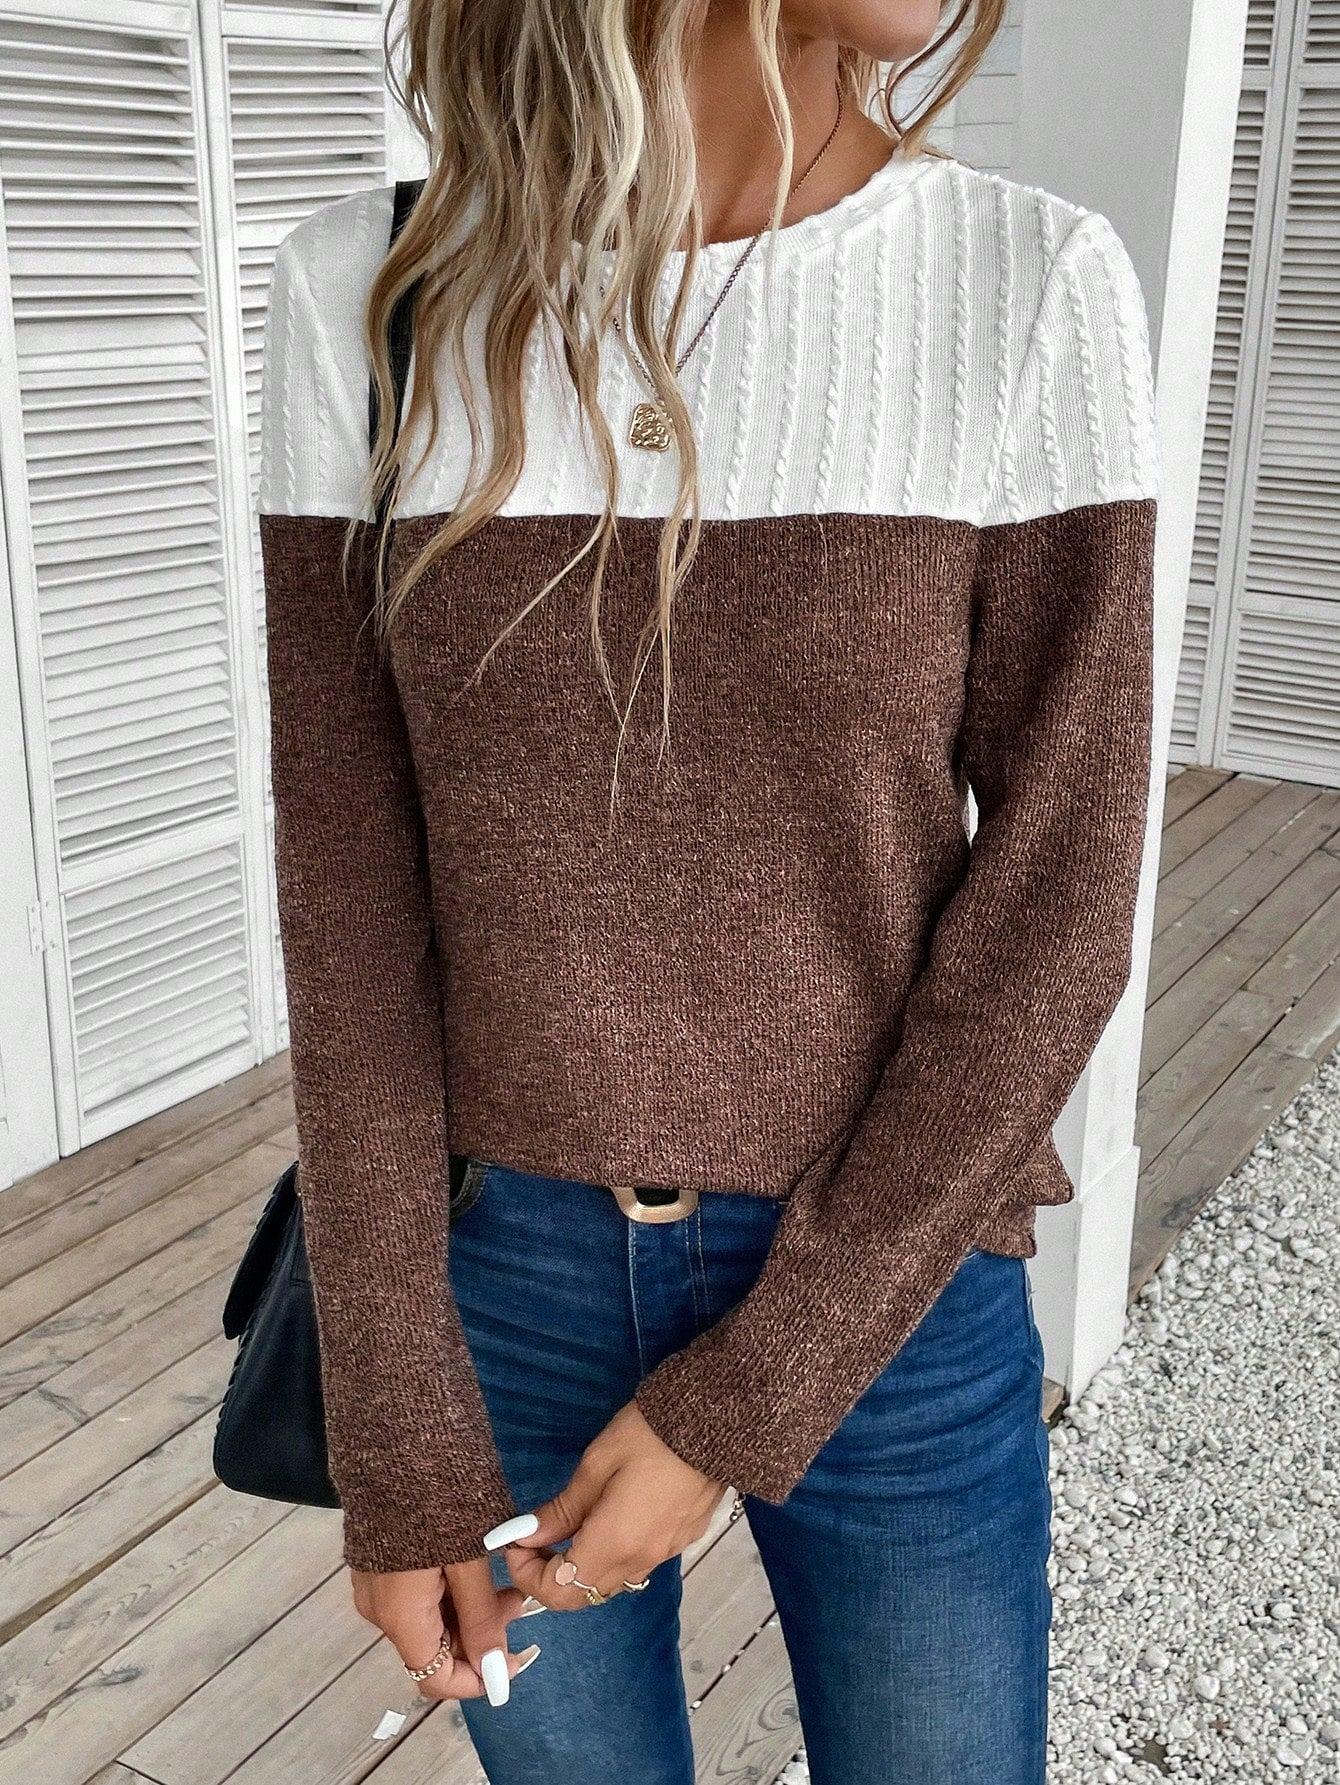 brązowy dzianinowy sweter łączenie kontrast tekstura